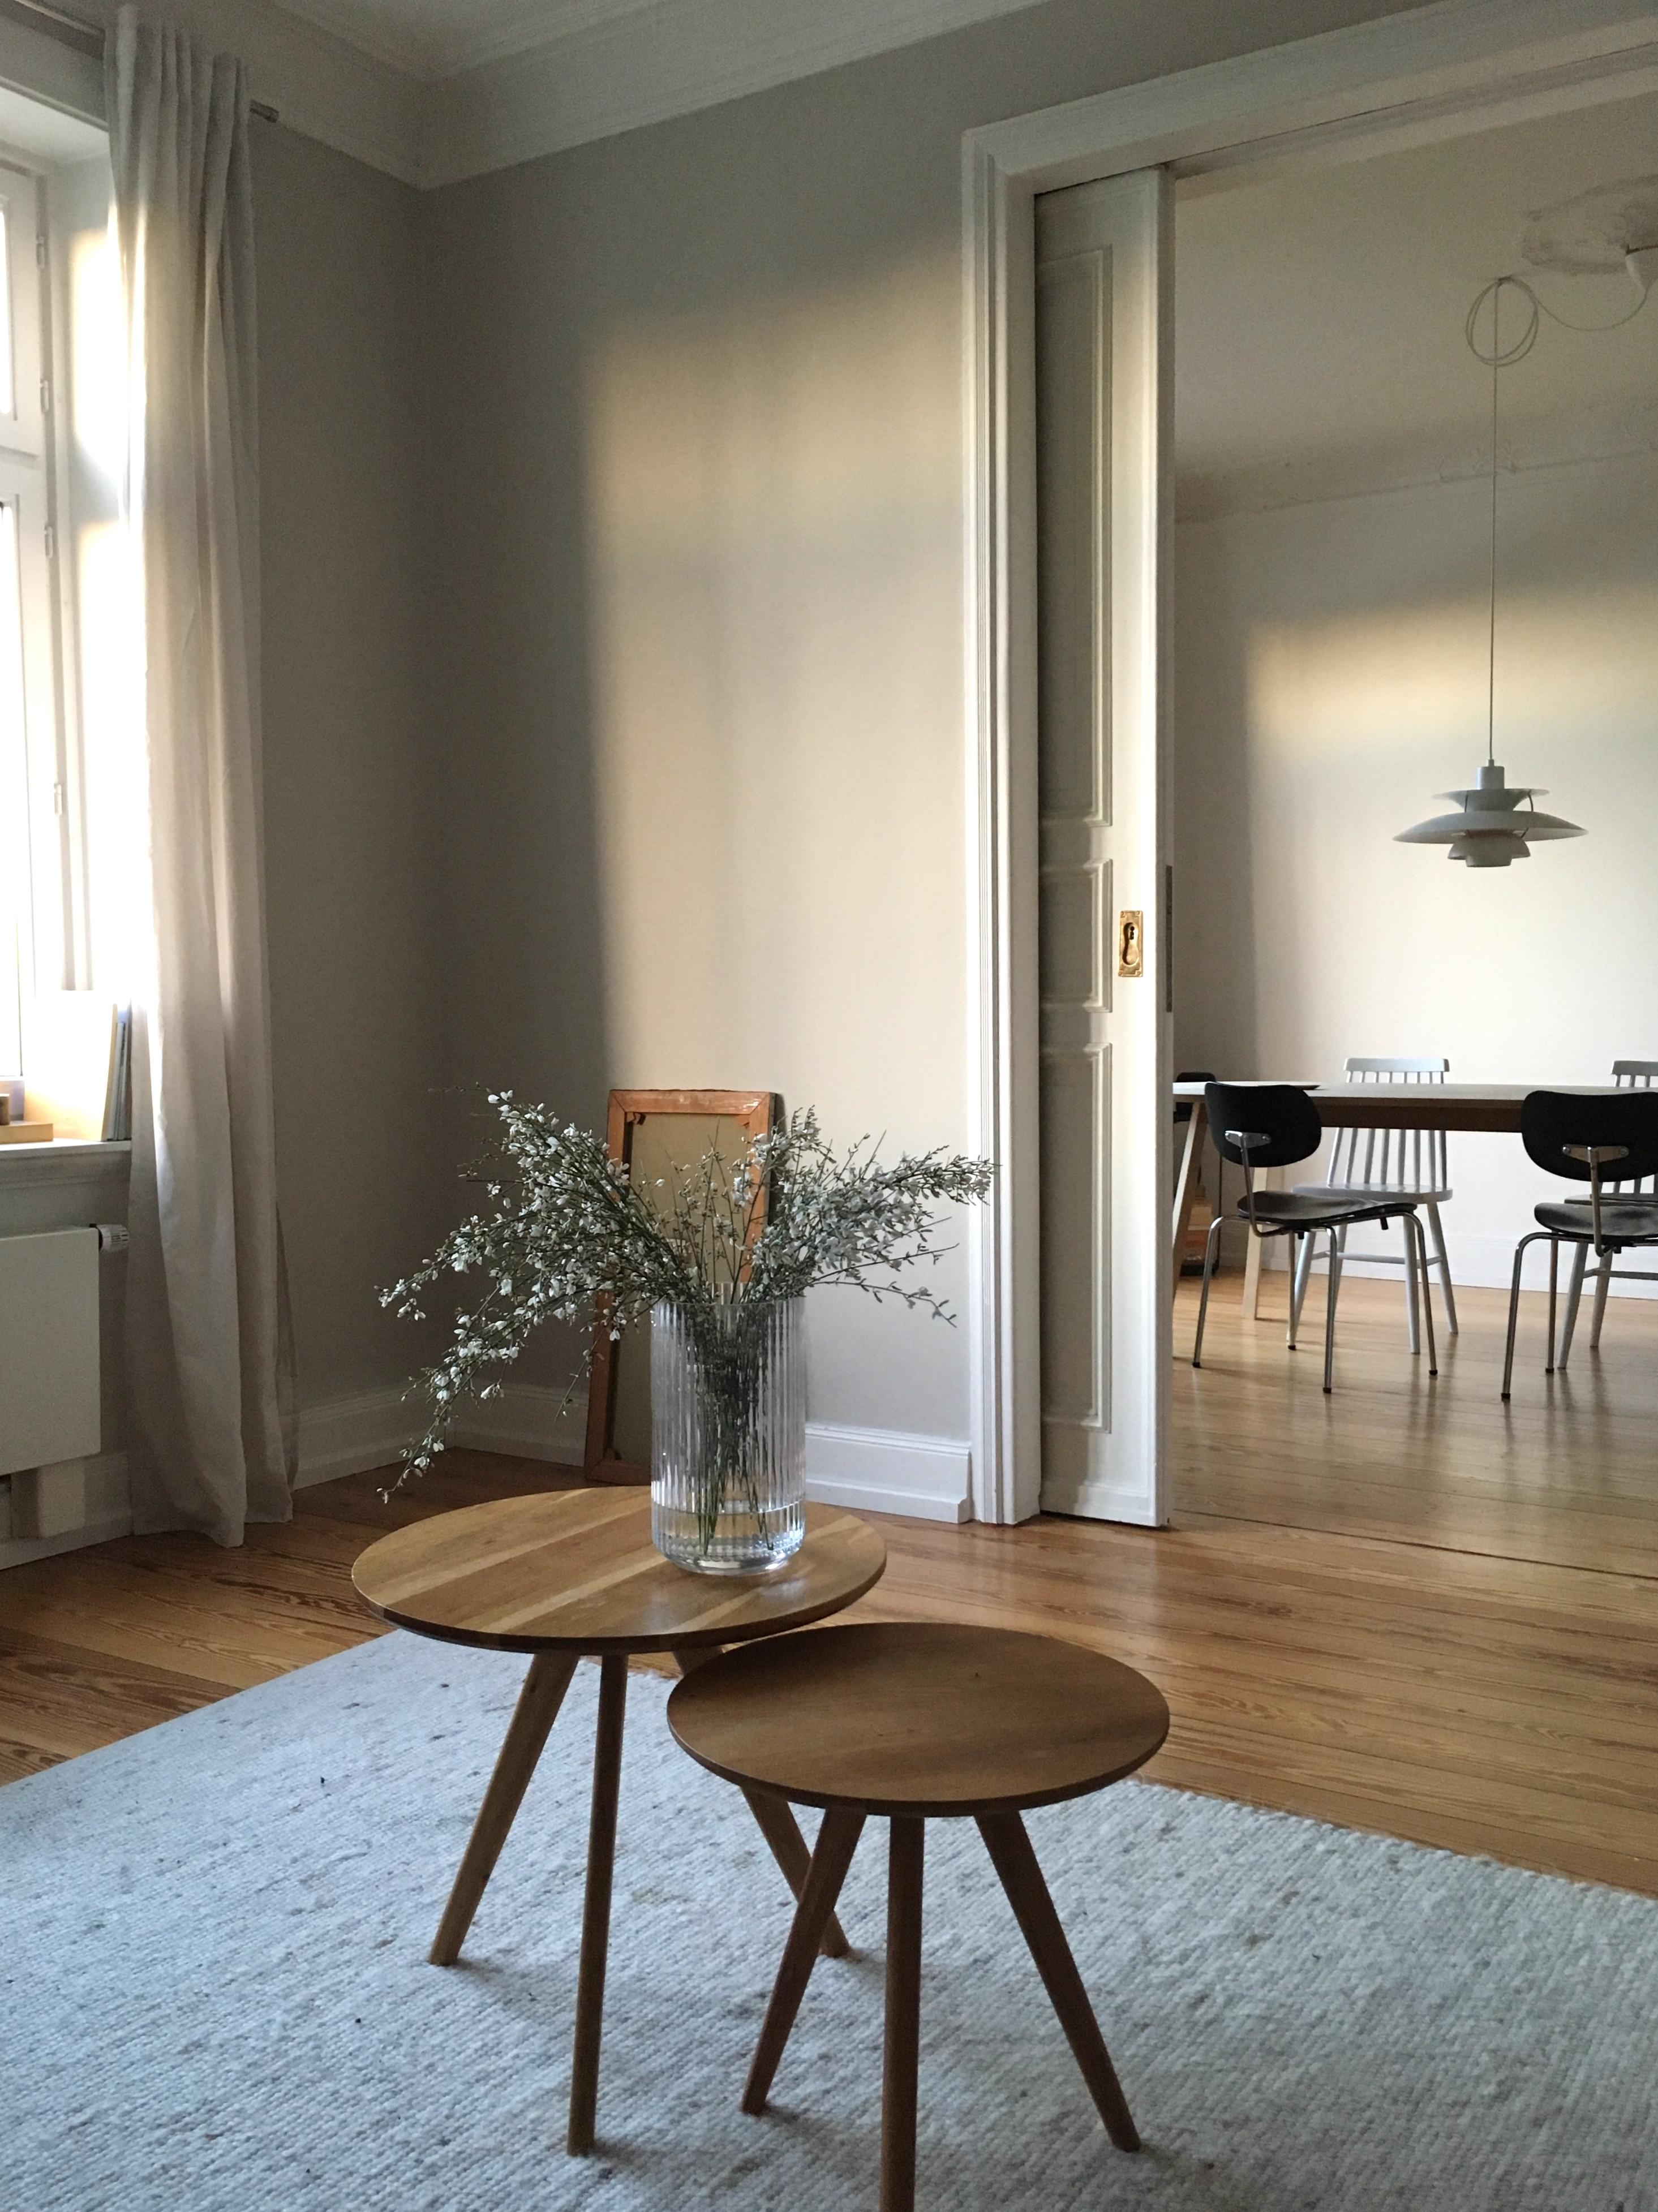 endlich sonne #altbau #wohnzimmer #altbauliebe #blumen #esstisch #stühle #living #interior #lampe #livingchallenge